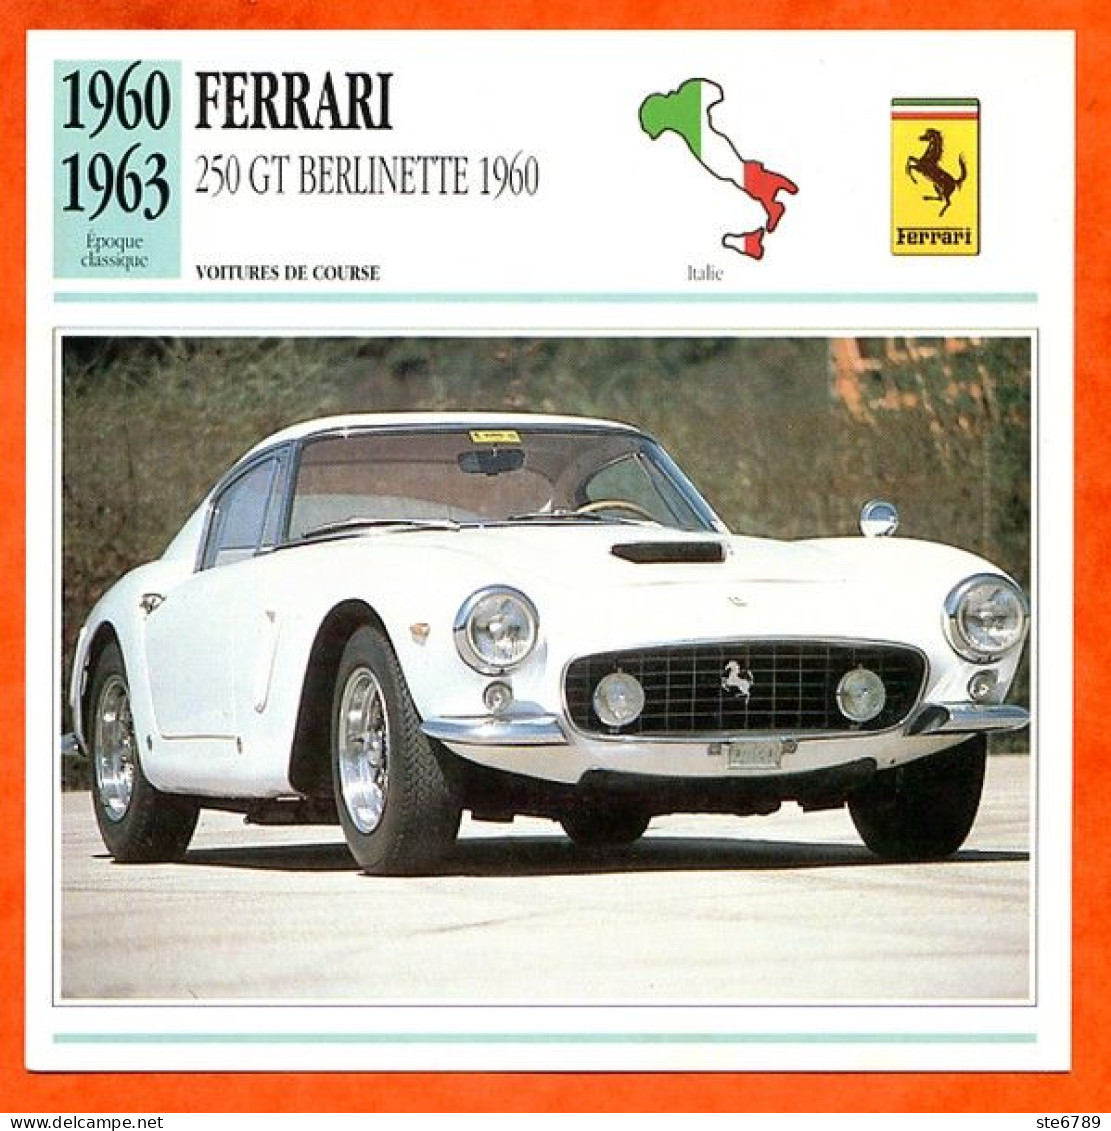 FERRARI 250 GT BERLINETTE 1960 Voiture De Course Italie Fiche Technique Automobile - Automobili